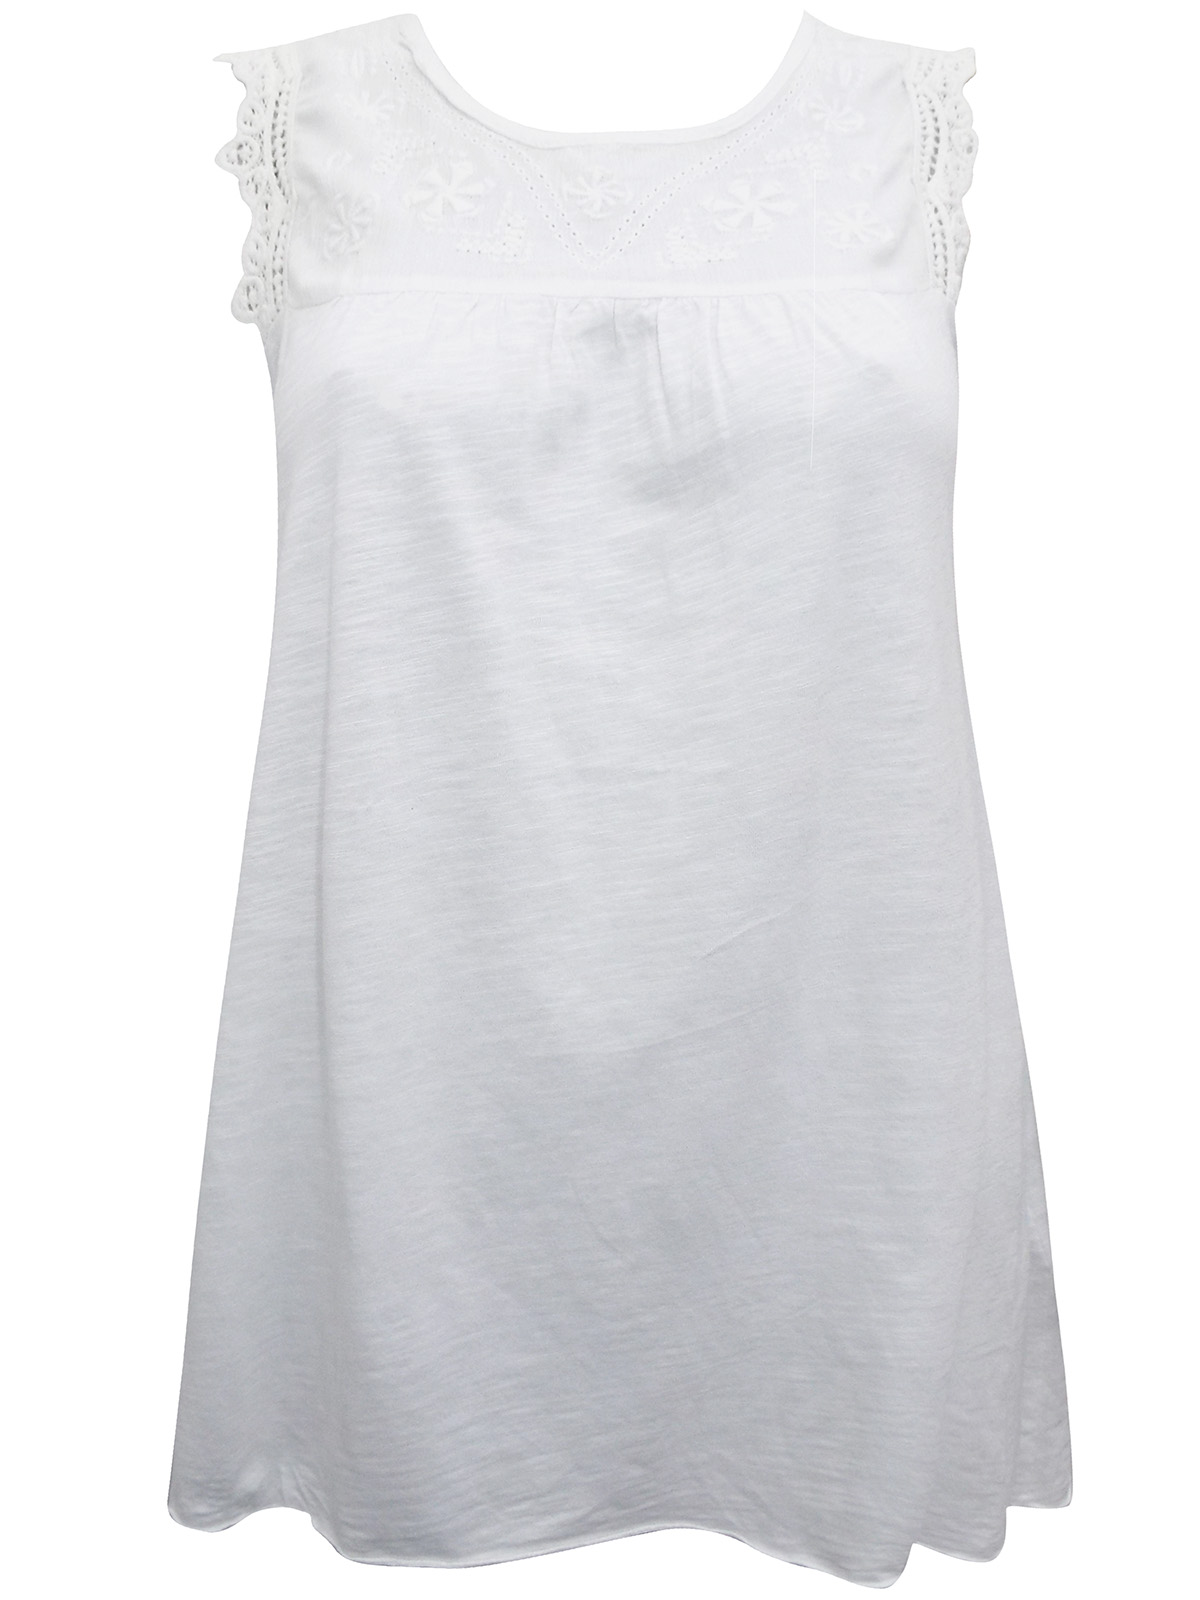 Zamba - - Zamba WHITE Sleeveless Embroidered Top - Size 10 to 14